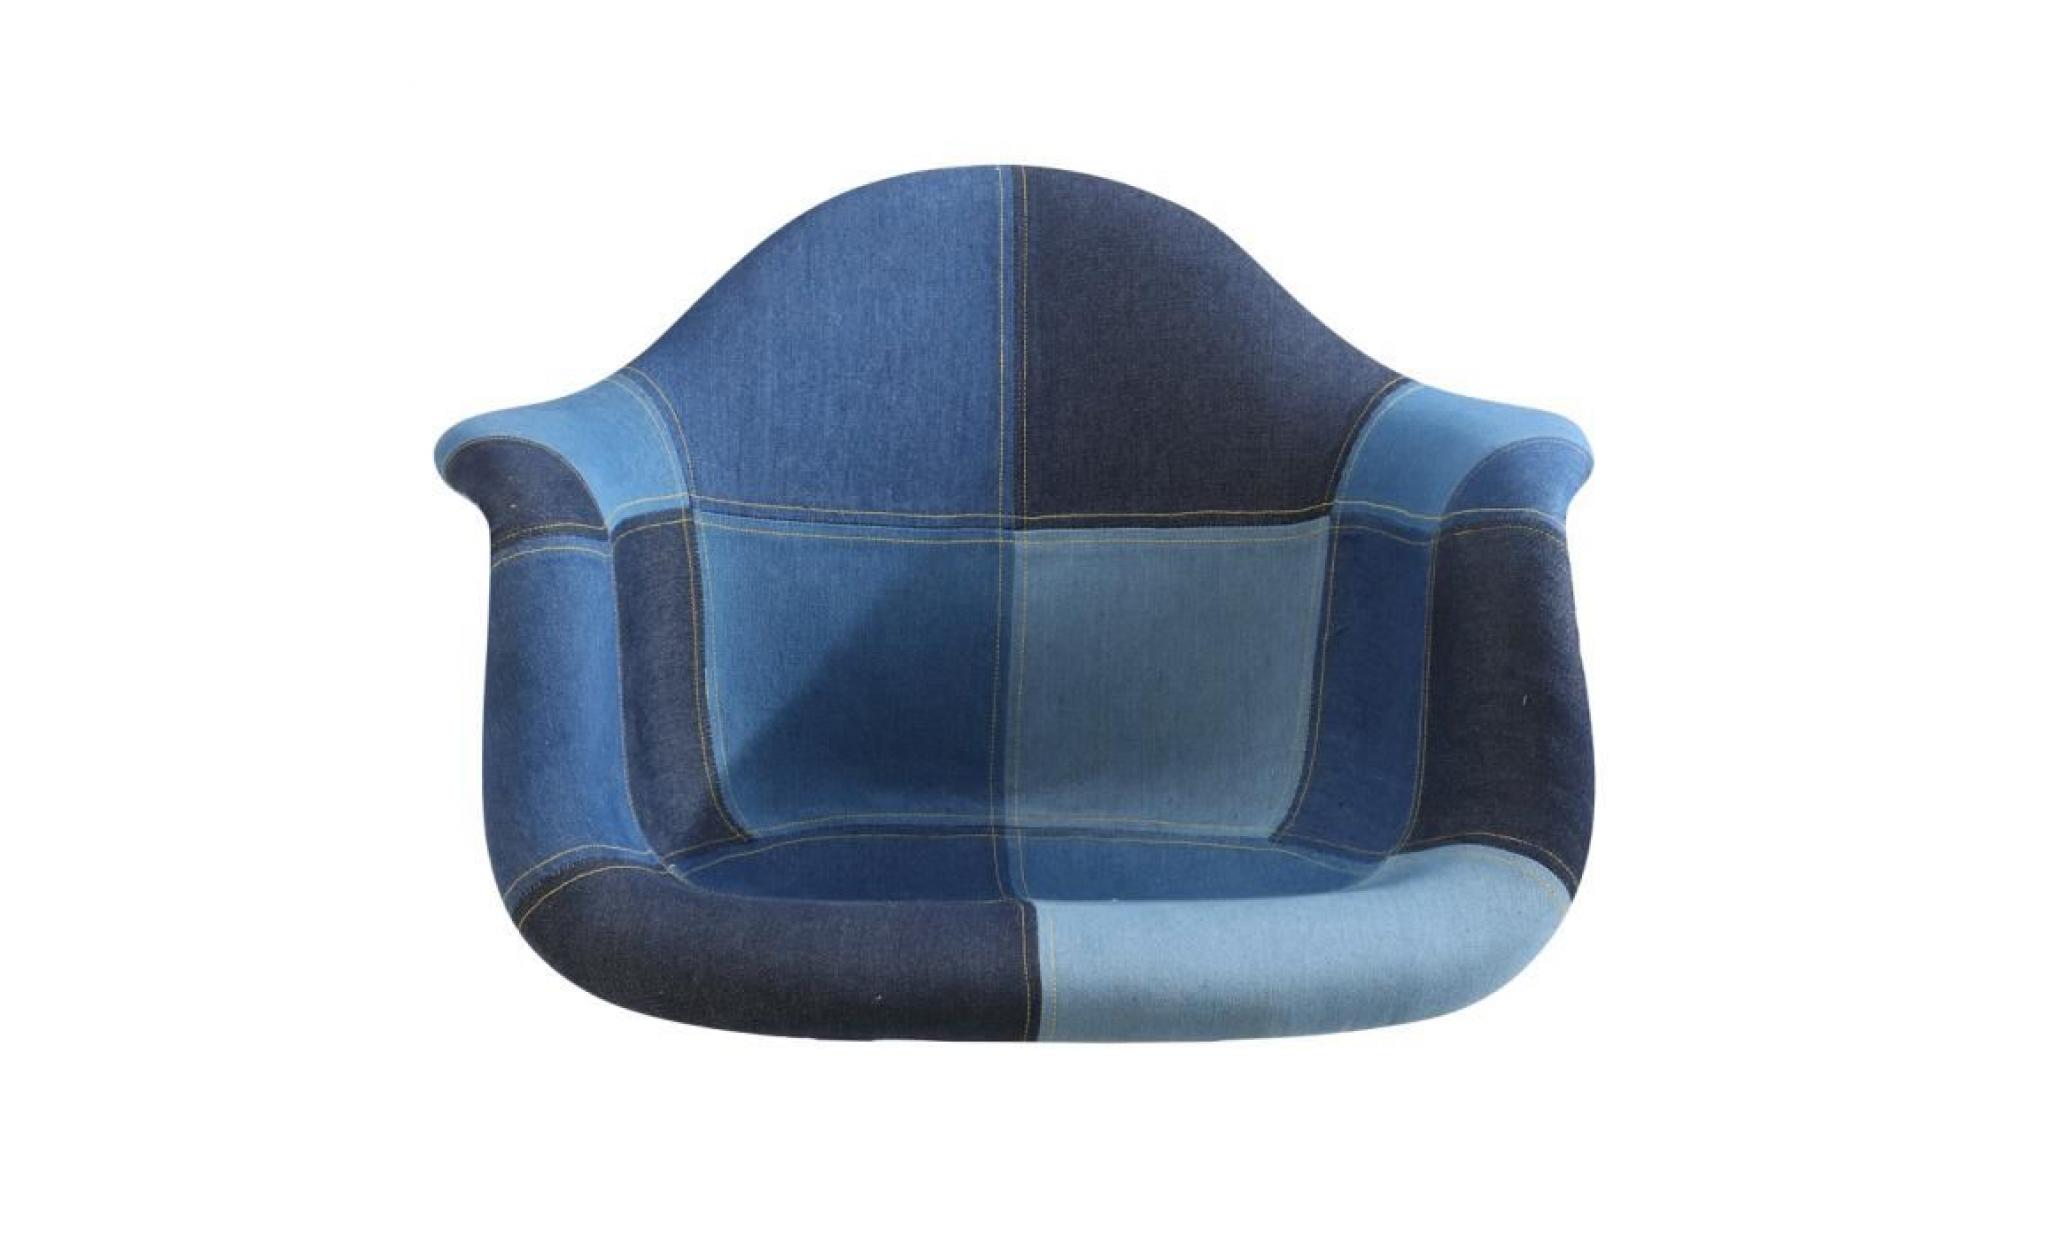 1 x fauteuil style eames dar eiffel design pieds acier noir assise bleu marine mobistyl® pas cher